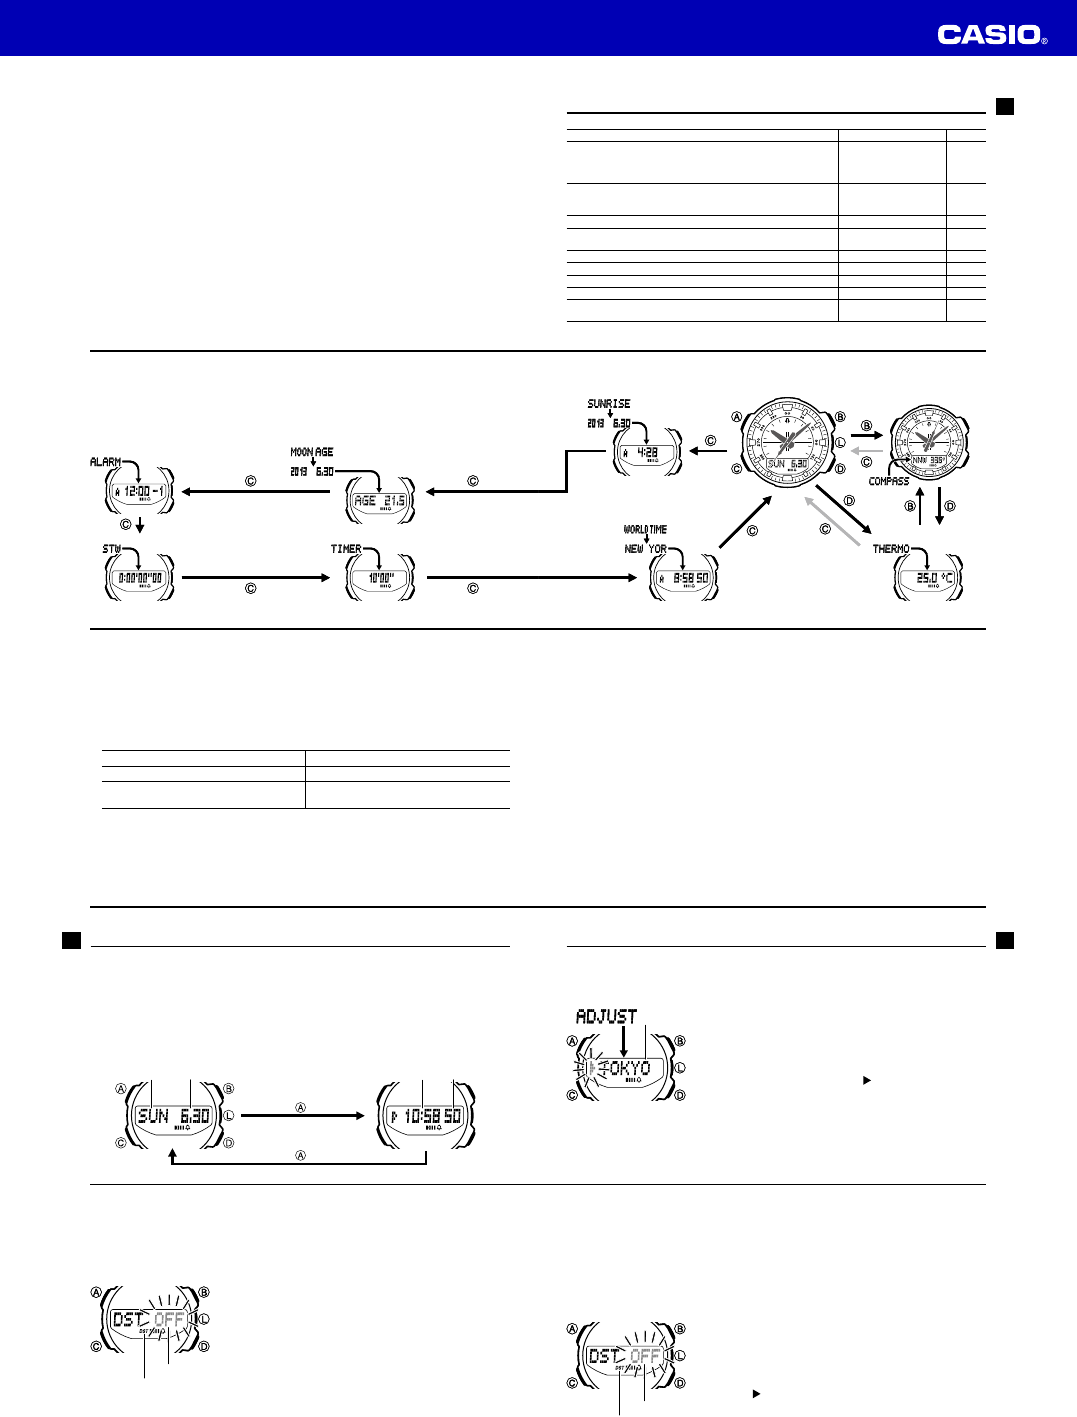 Handleiding Casio 5269 - SGW-500 (pagina 2 van 9) (Deutsch)